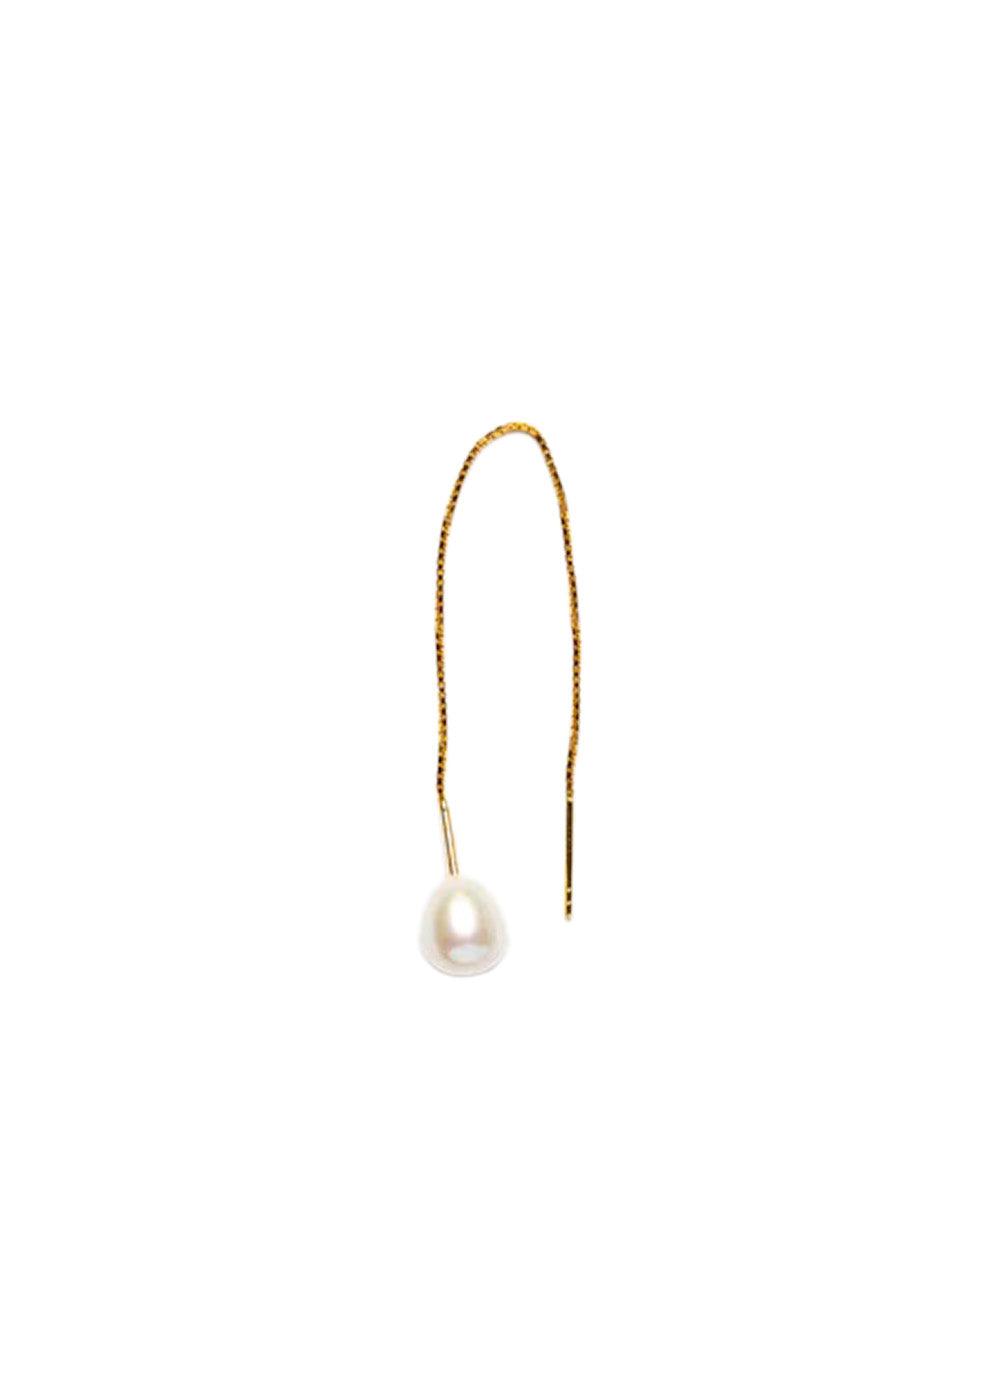 Sorelles Pearl Chain - White. Køb øreringe her.